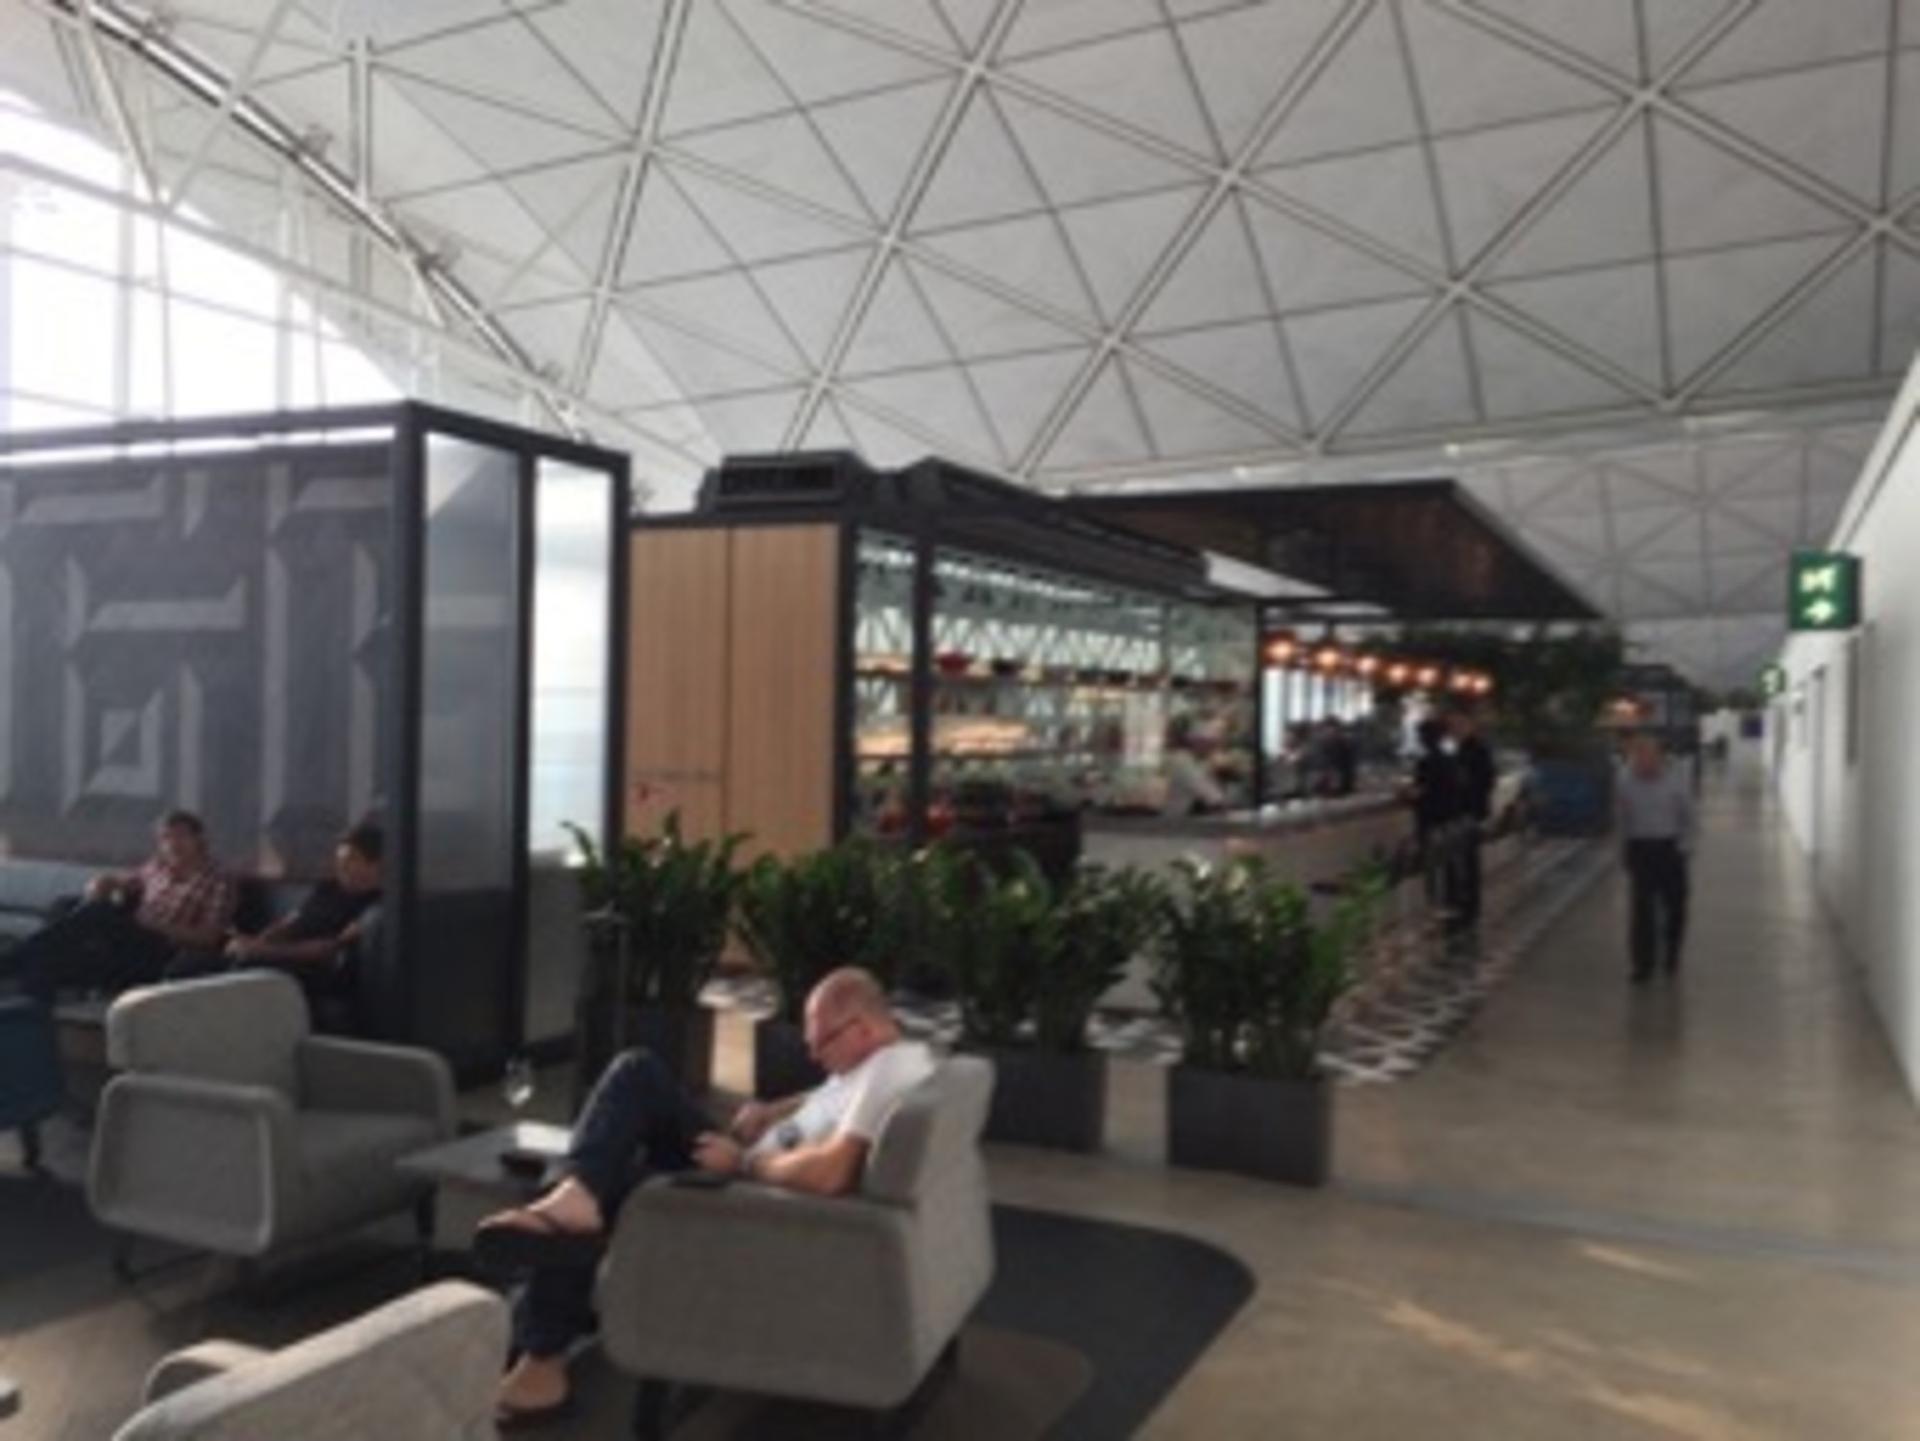 The Qantas Hong Kong Lounge image 43 of 99